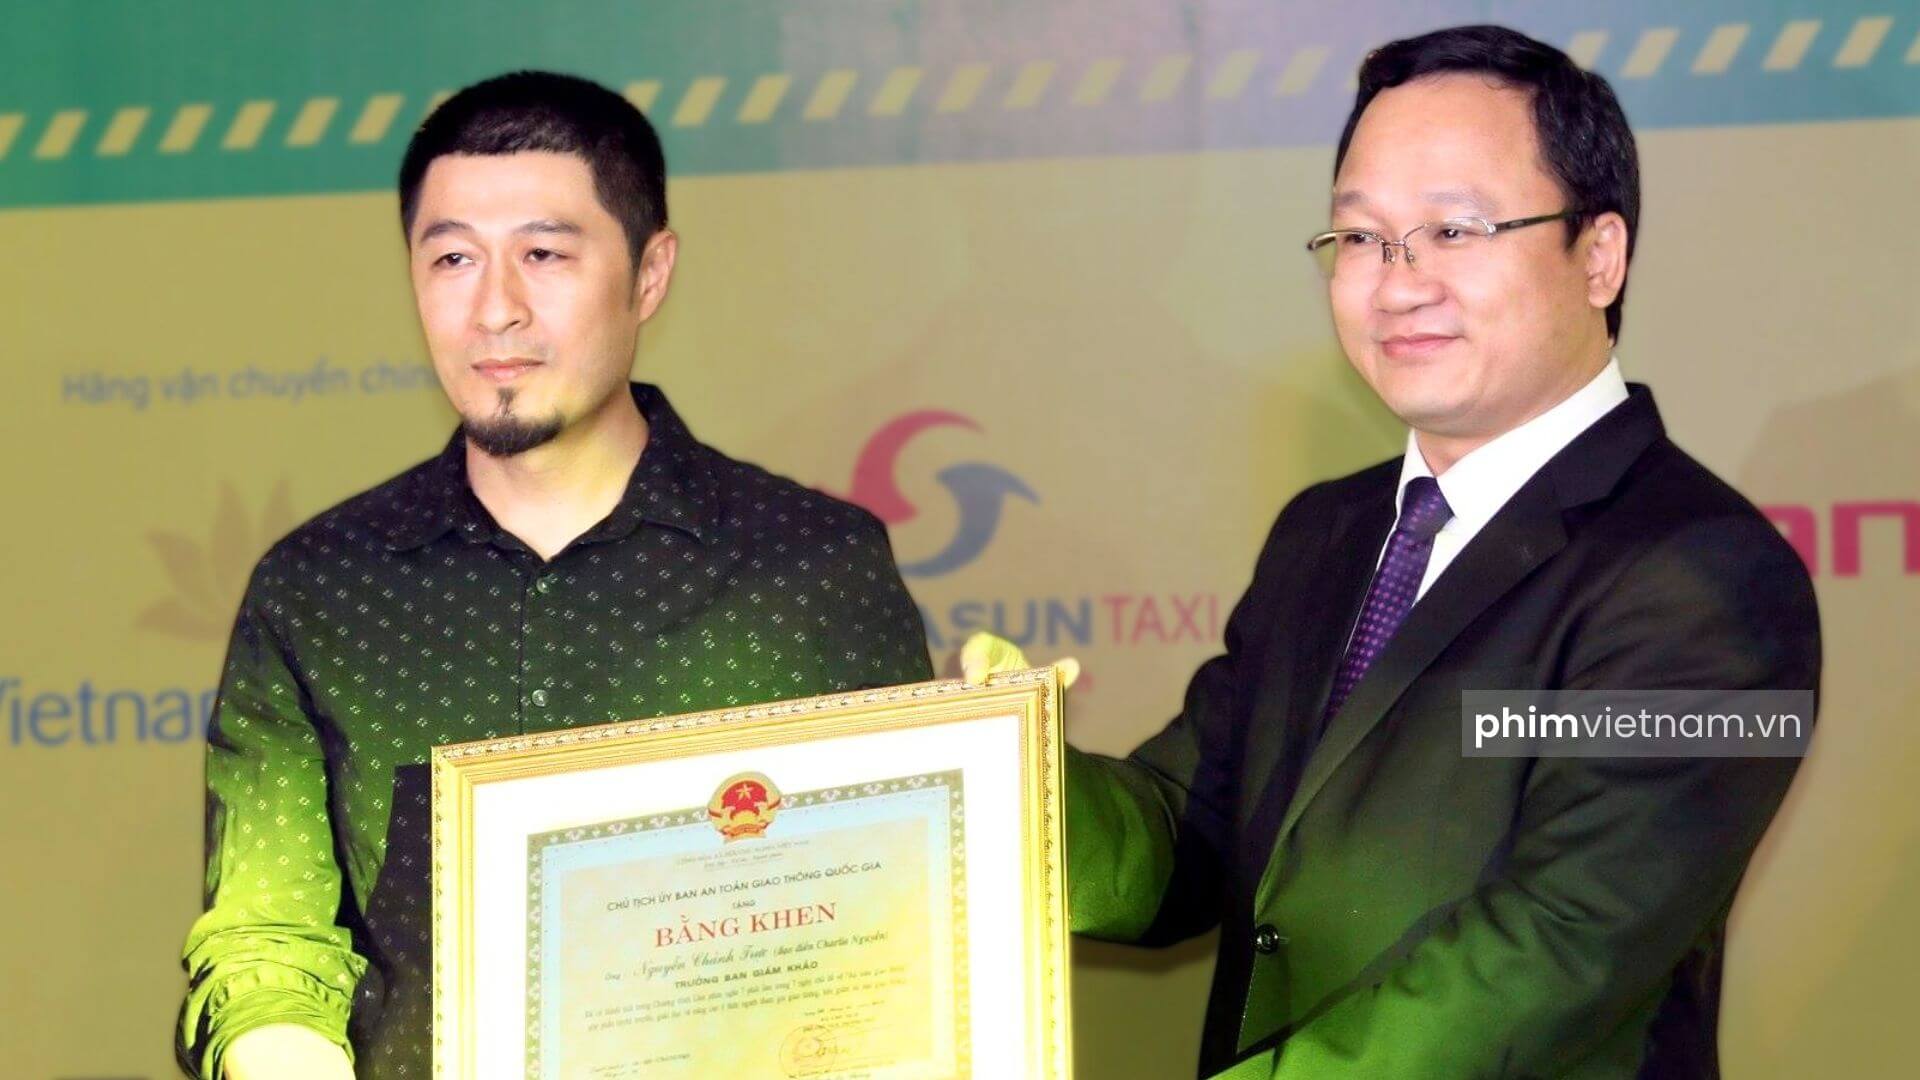 Đạo diễn Charlie Nguyễn nhận bằng khen từ bộ trưởng chính phủ